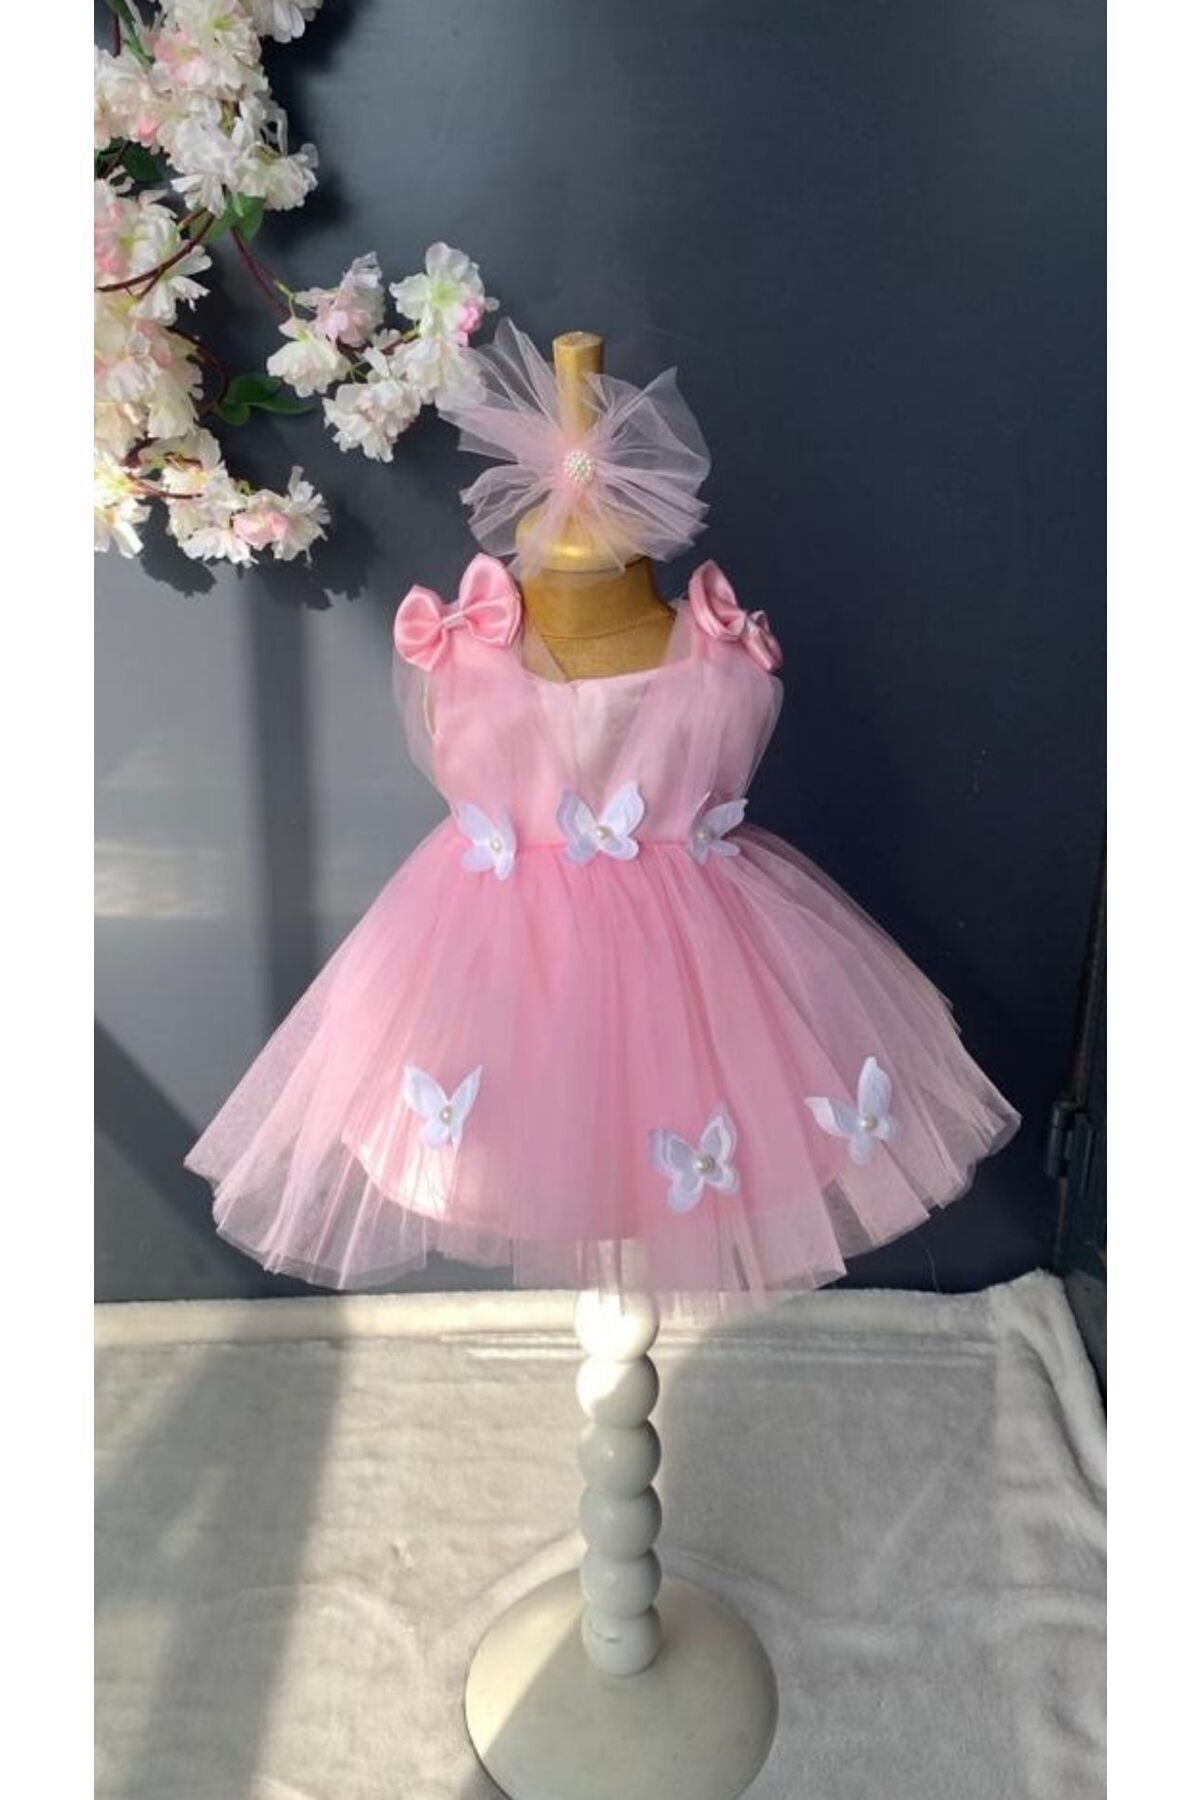 Harry&Millie Ponpon Baby Kız Bebek Yenidoğan Mevlüt Elbisesi Bebek Hediyelik Mevlütlük Elbise